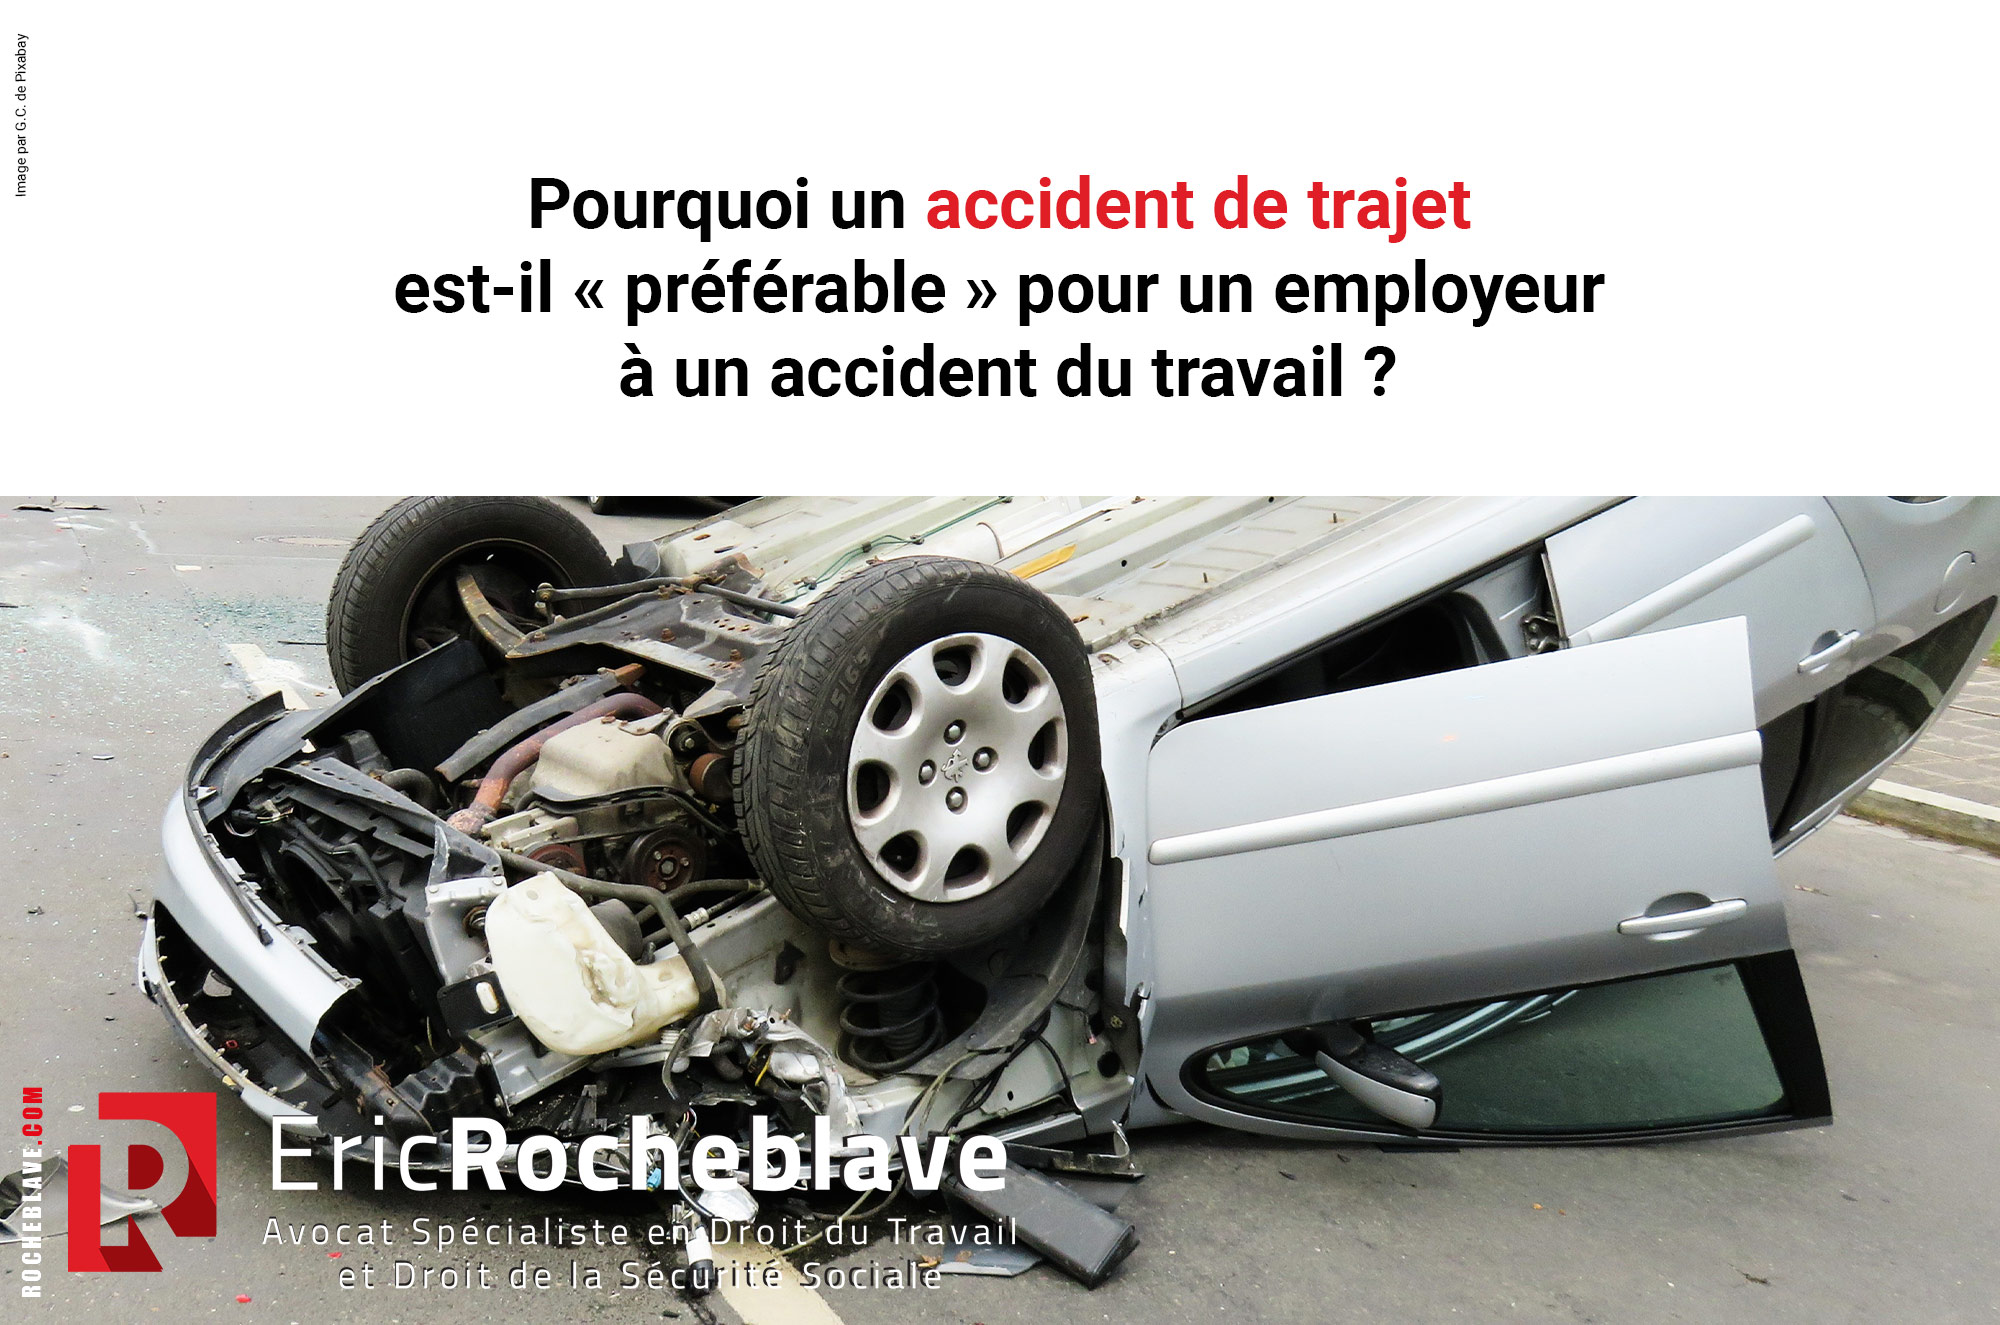 Pourquoi un accident du trajet est-il « préférable » pour un employeur à un accident du travail ?